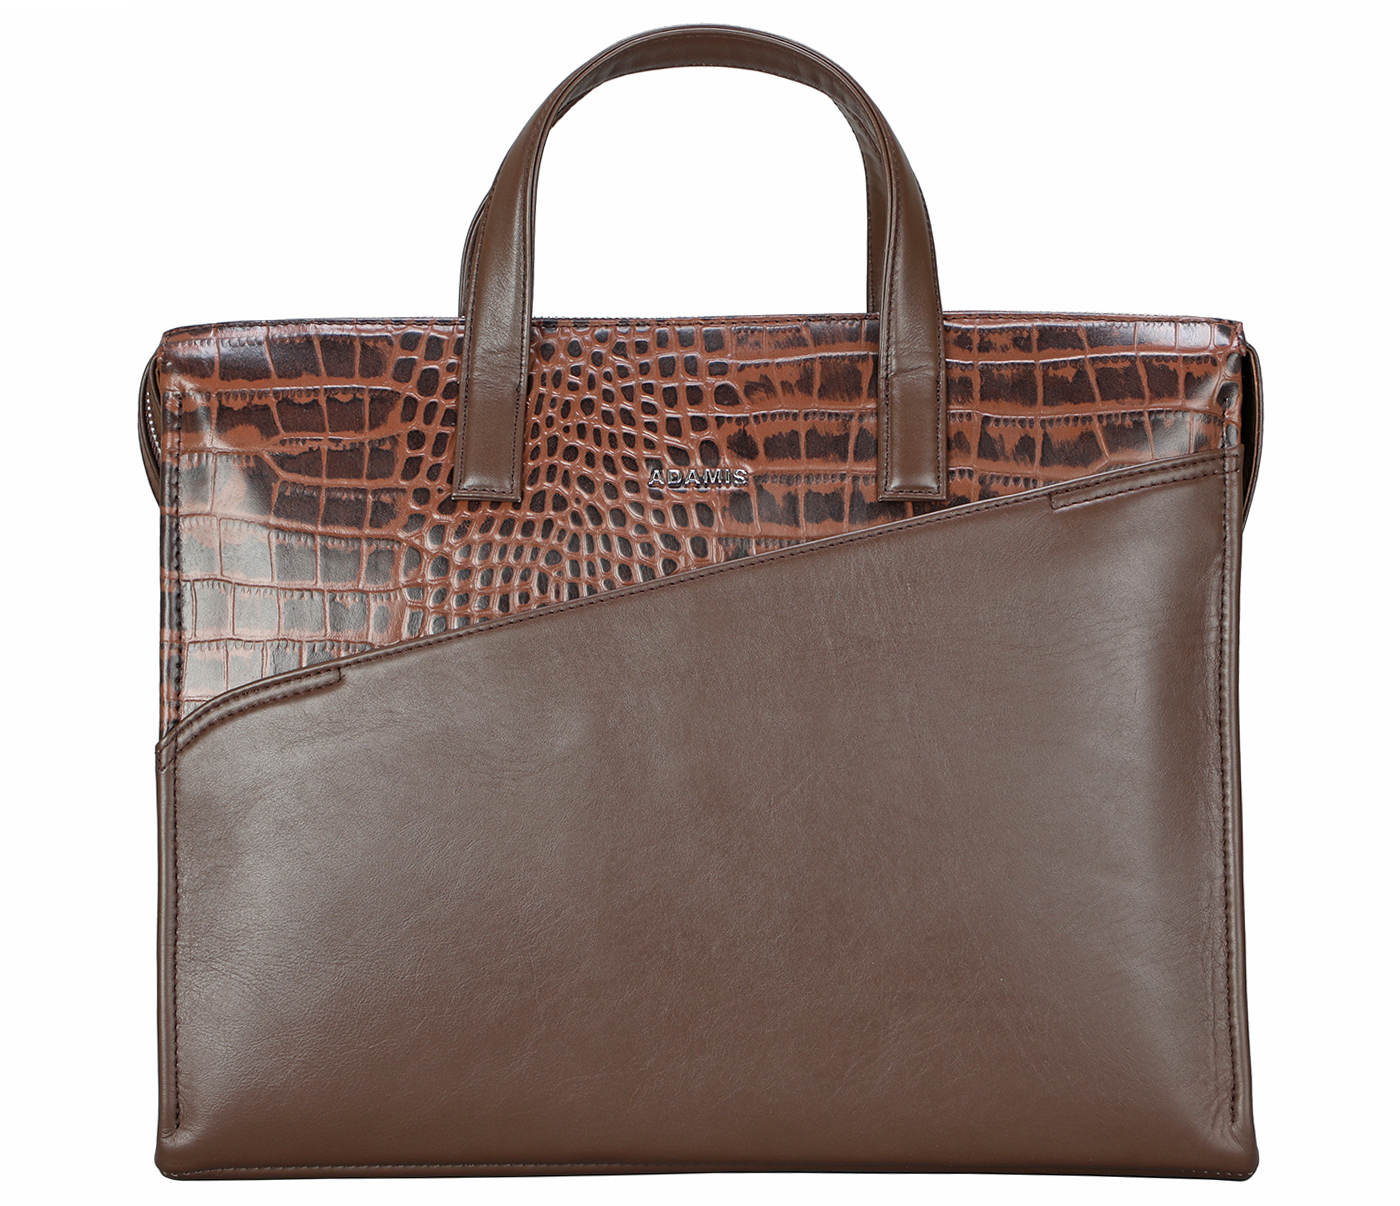 Portfolio / Laptop Bag-Sergio-Laptop cum portfolio slim bag in Genuine Leather - Brown